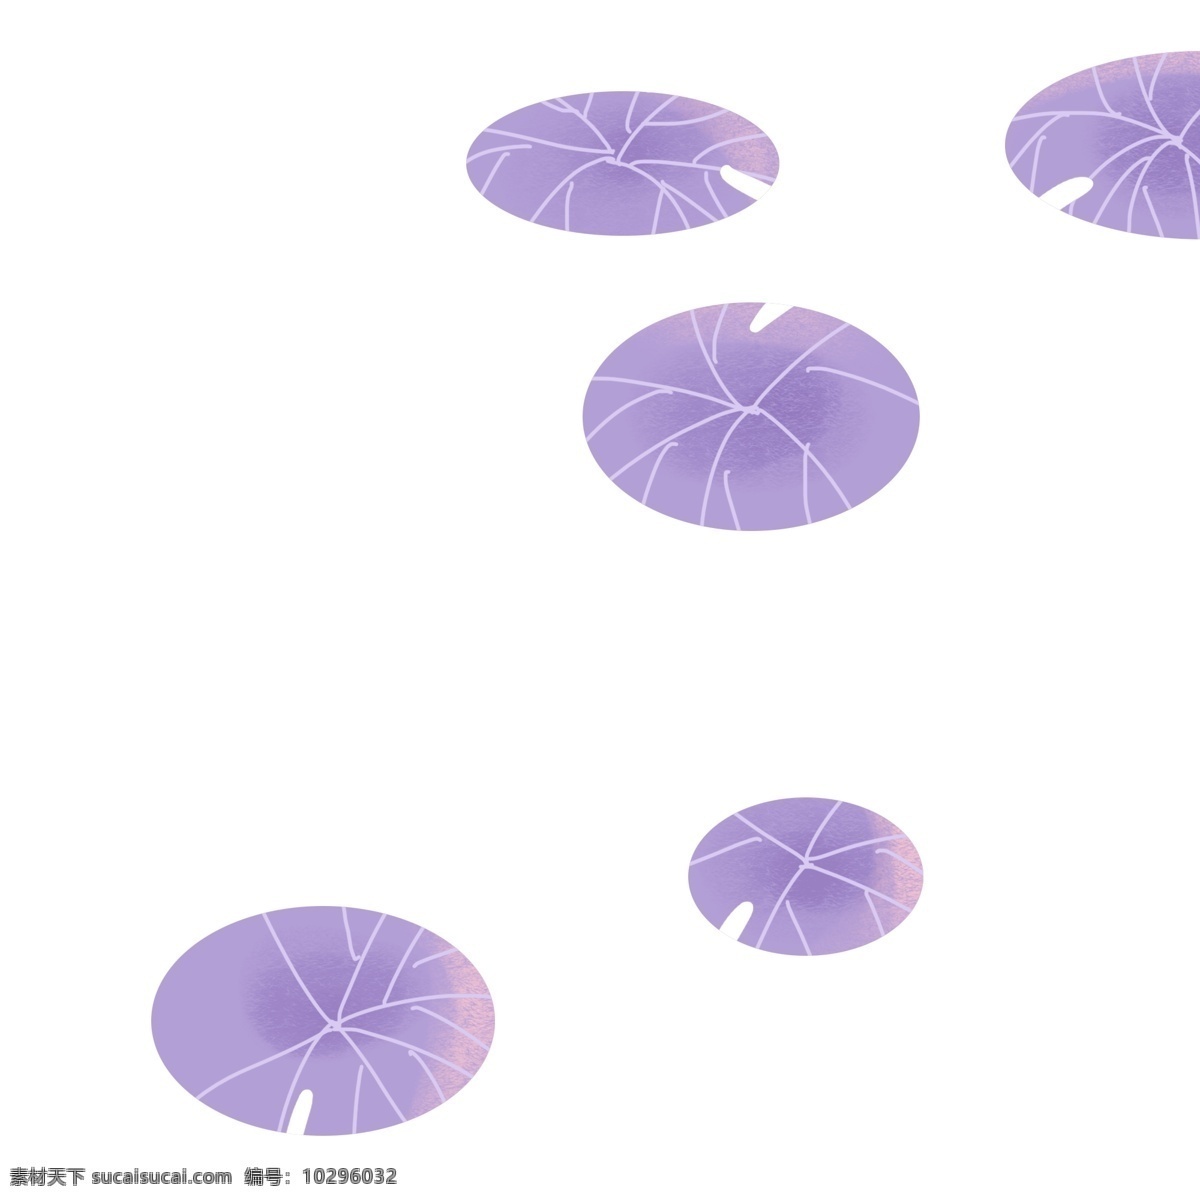 紫色 圆弧 创意 荷叶 元素 夏季 季节 变化 大自然 风景 装饰